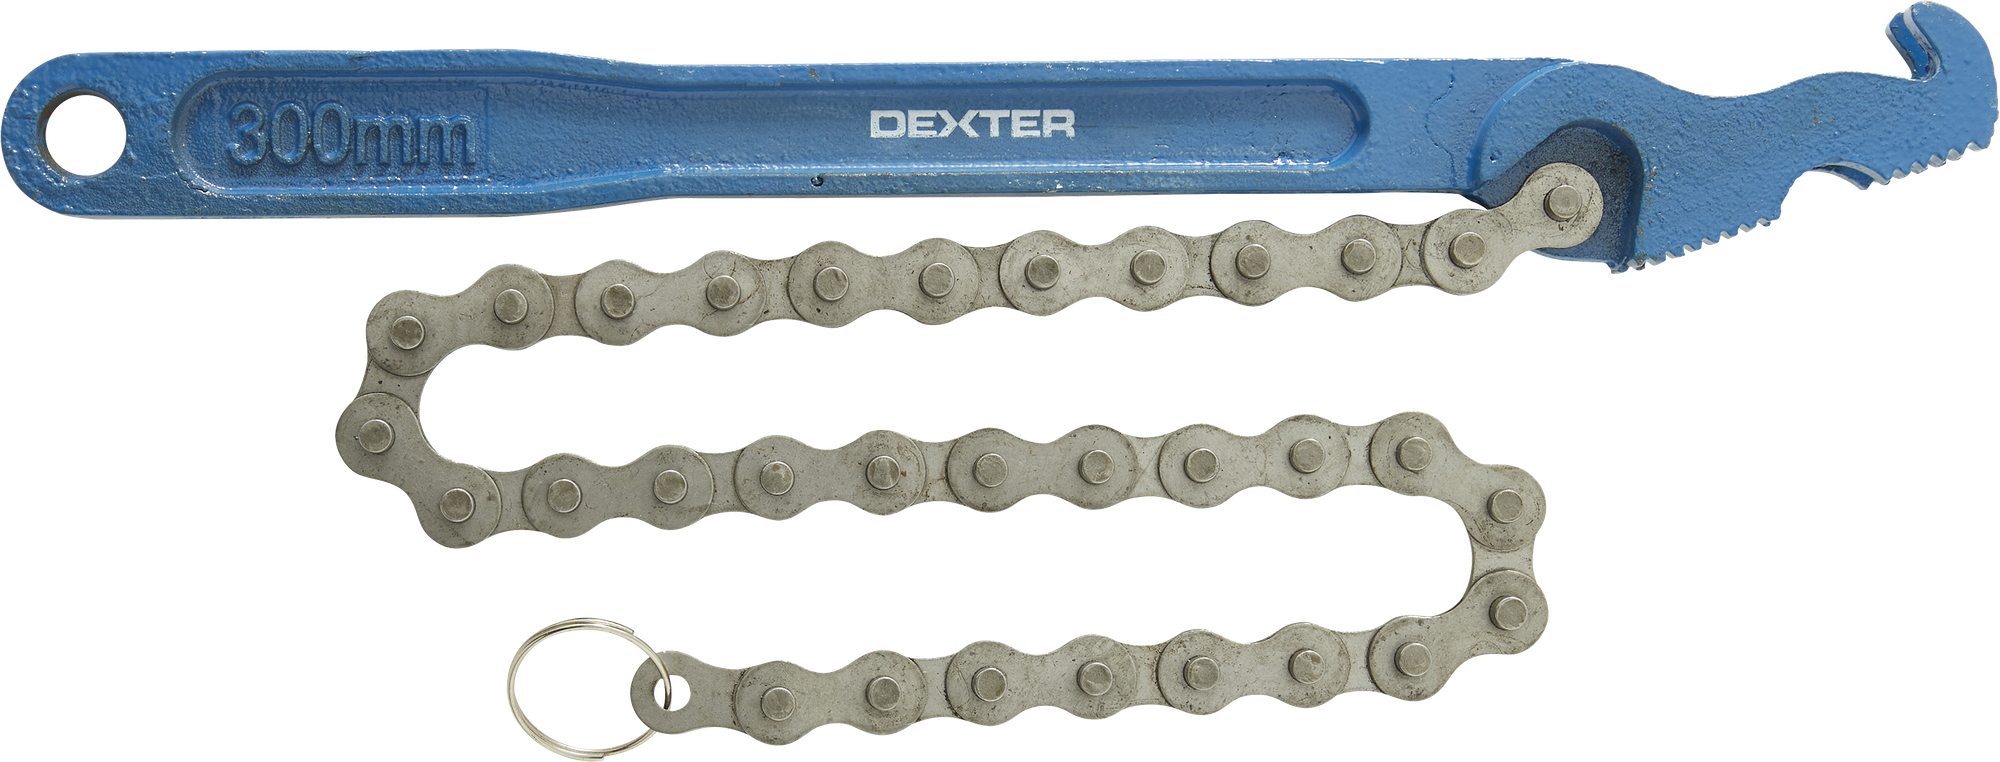 Ключ цепной двусторонний Dexter XMCW05 захват 127 мм длина 300 мм